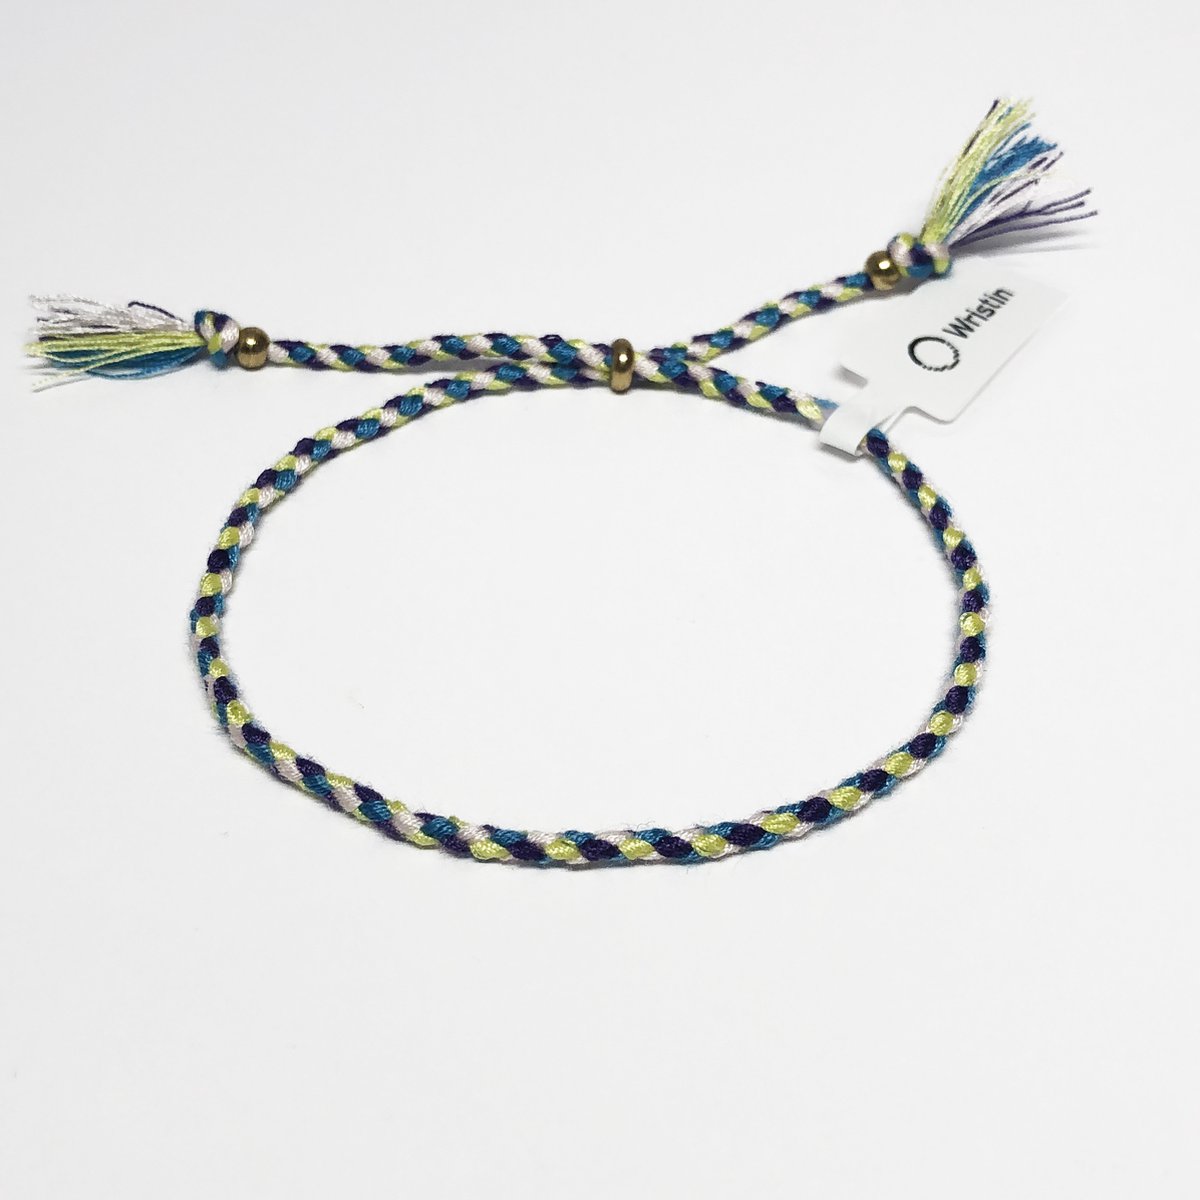 Wristin - Tibetaanse armband gevlochten groen/blauw/paars